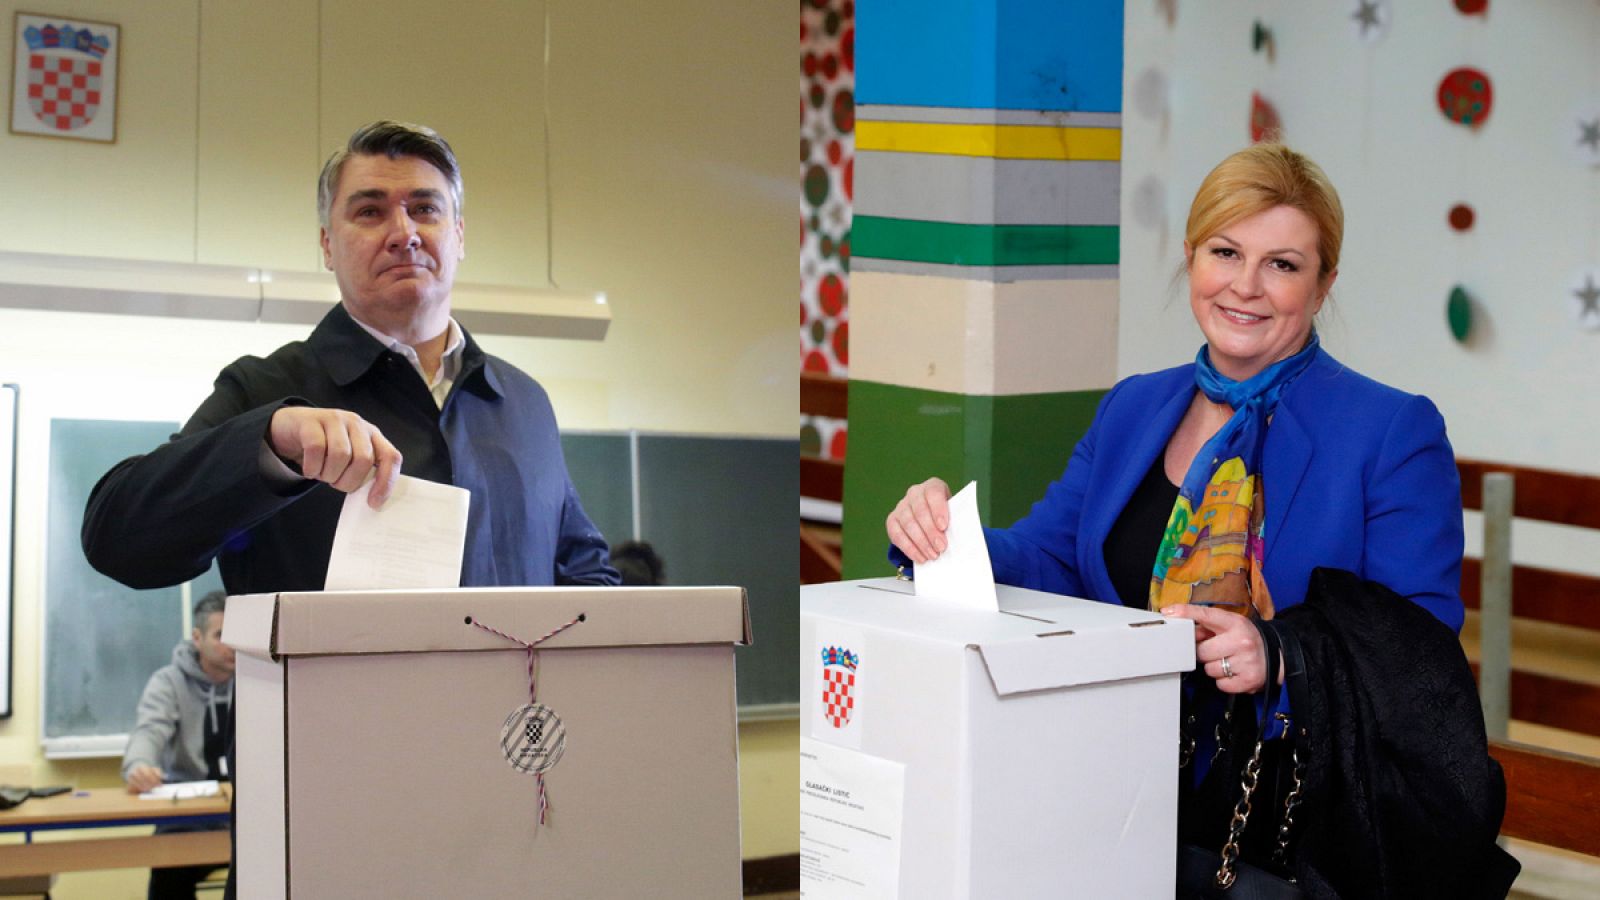 El ex primer ministro socialdemócrata Zoran Milanovic y la actual presidenta de Croacia, Kolinda Grabar-Kitarovic, depositan su voto